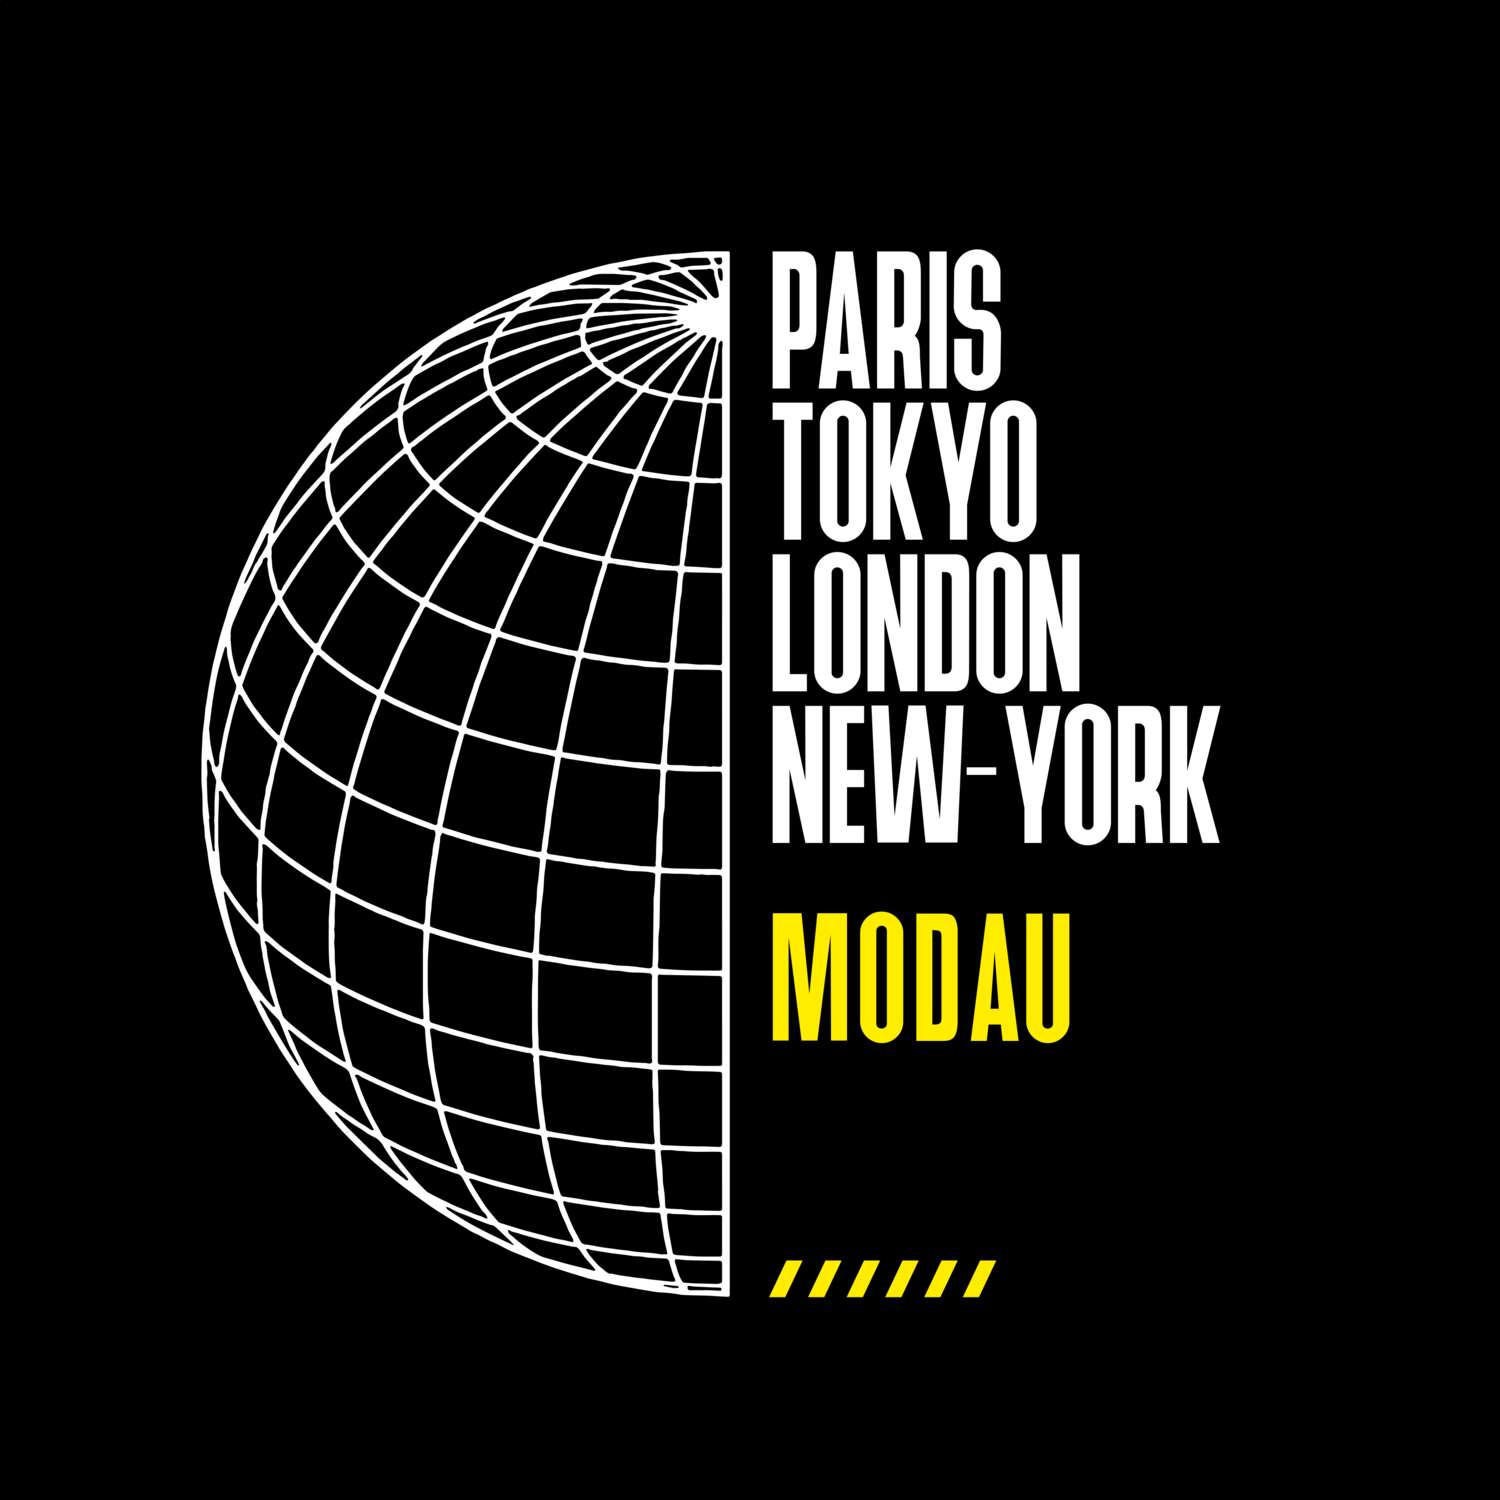 Modau T-Shirt »Paris Tokyo London«